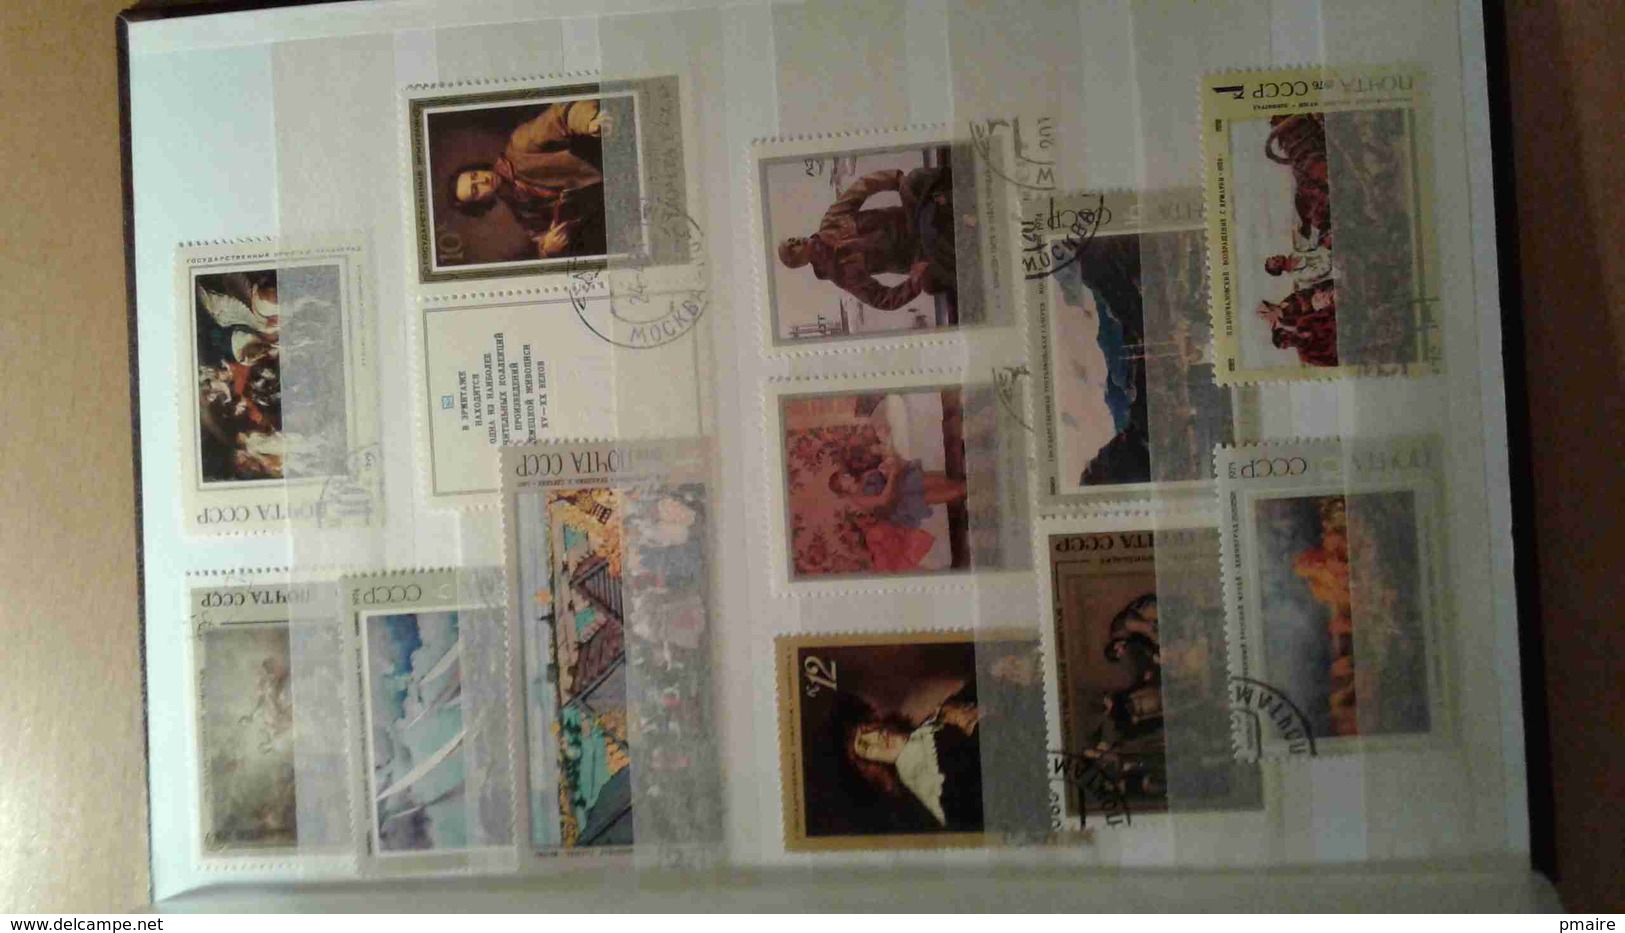 Petit album 16 pages plein de timbres theme Arts Tableaux, quelques bateaux, Napoleon ...